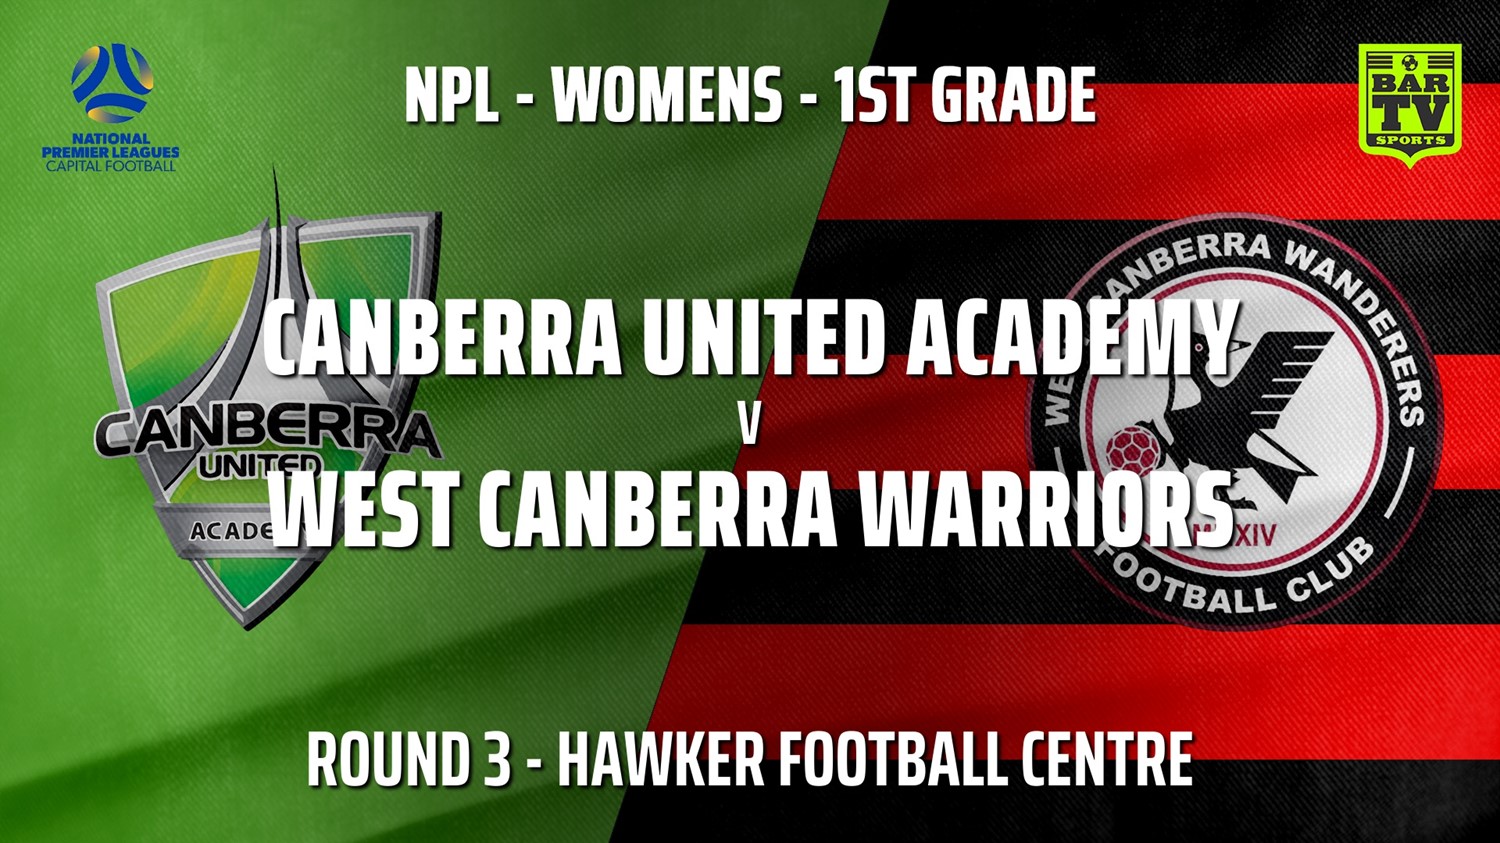 210422-NPLW - Capital Round 3 - Canberra United Academy v West Canberra Warriors (women) Slate Image